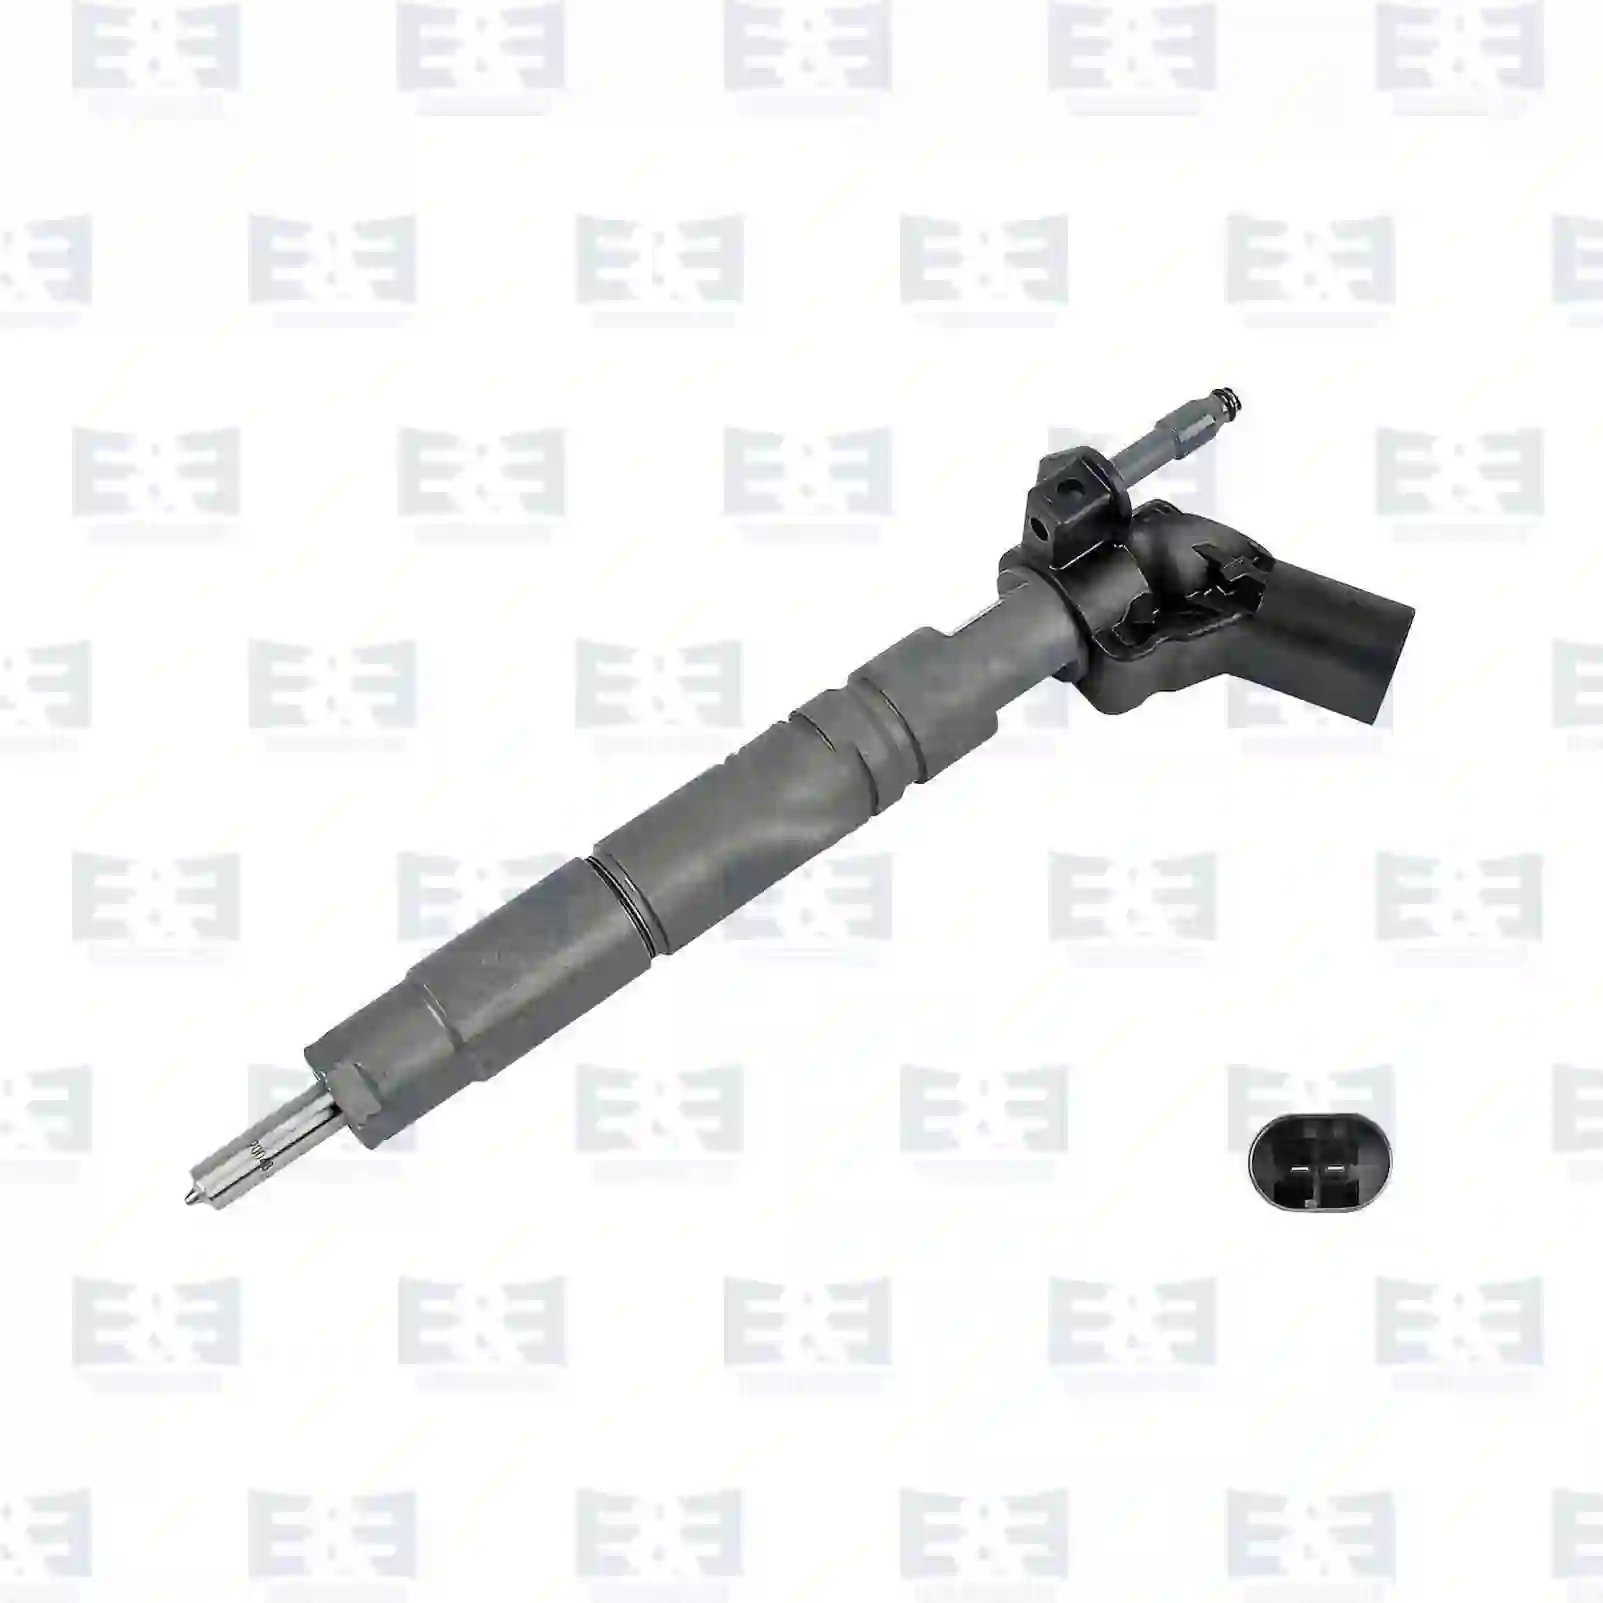  Injection valve || E&E Truck Spare Parts | Truck Spare Parts, Auotomotive Spare Parts